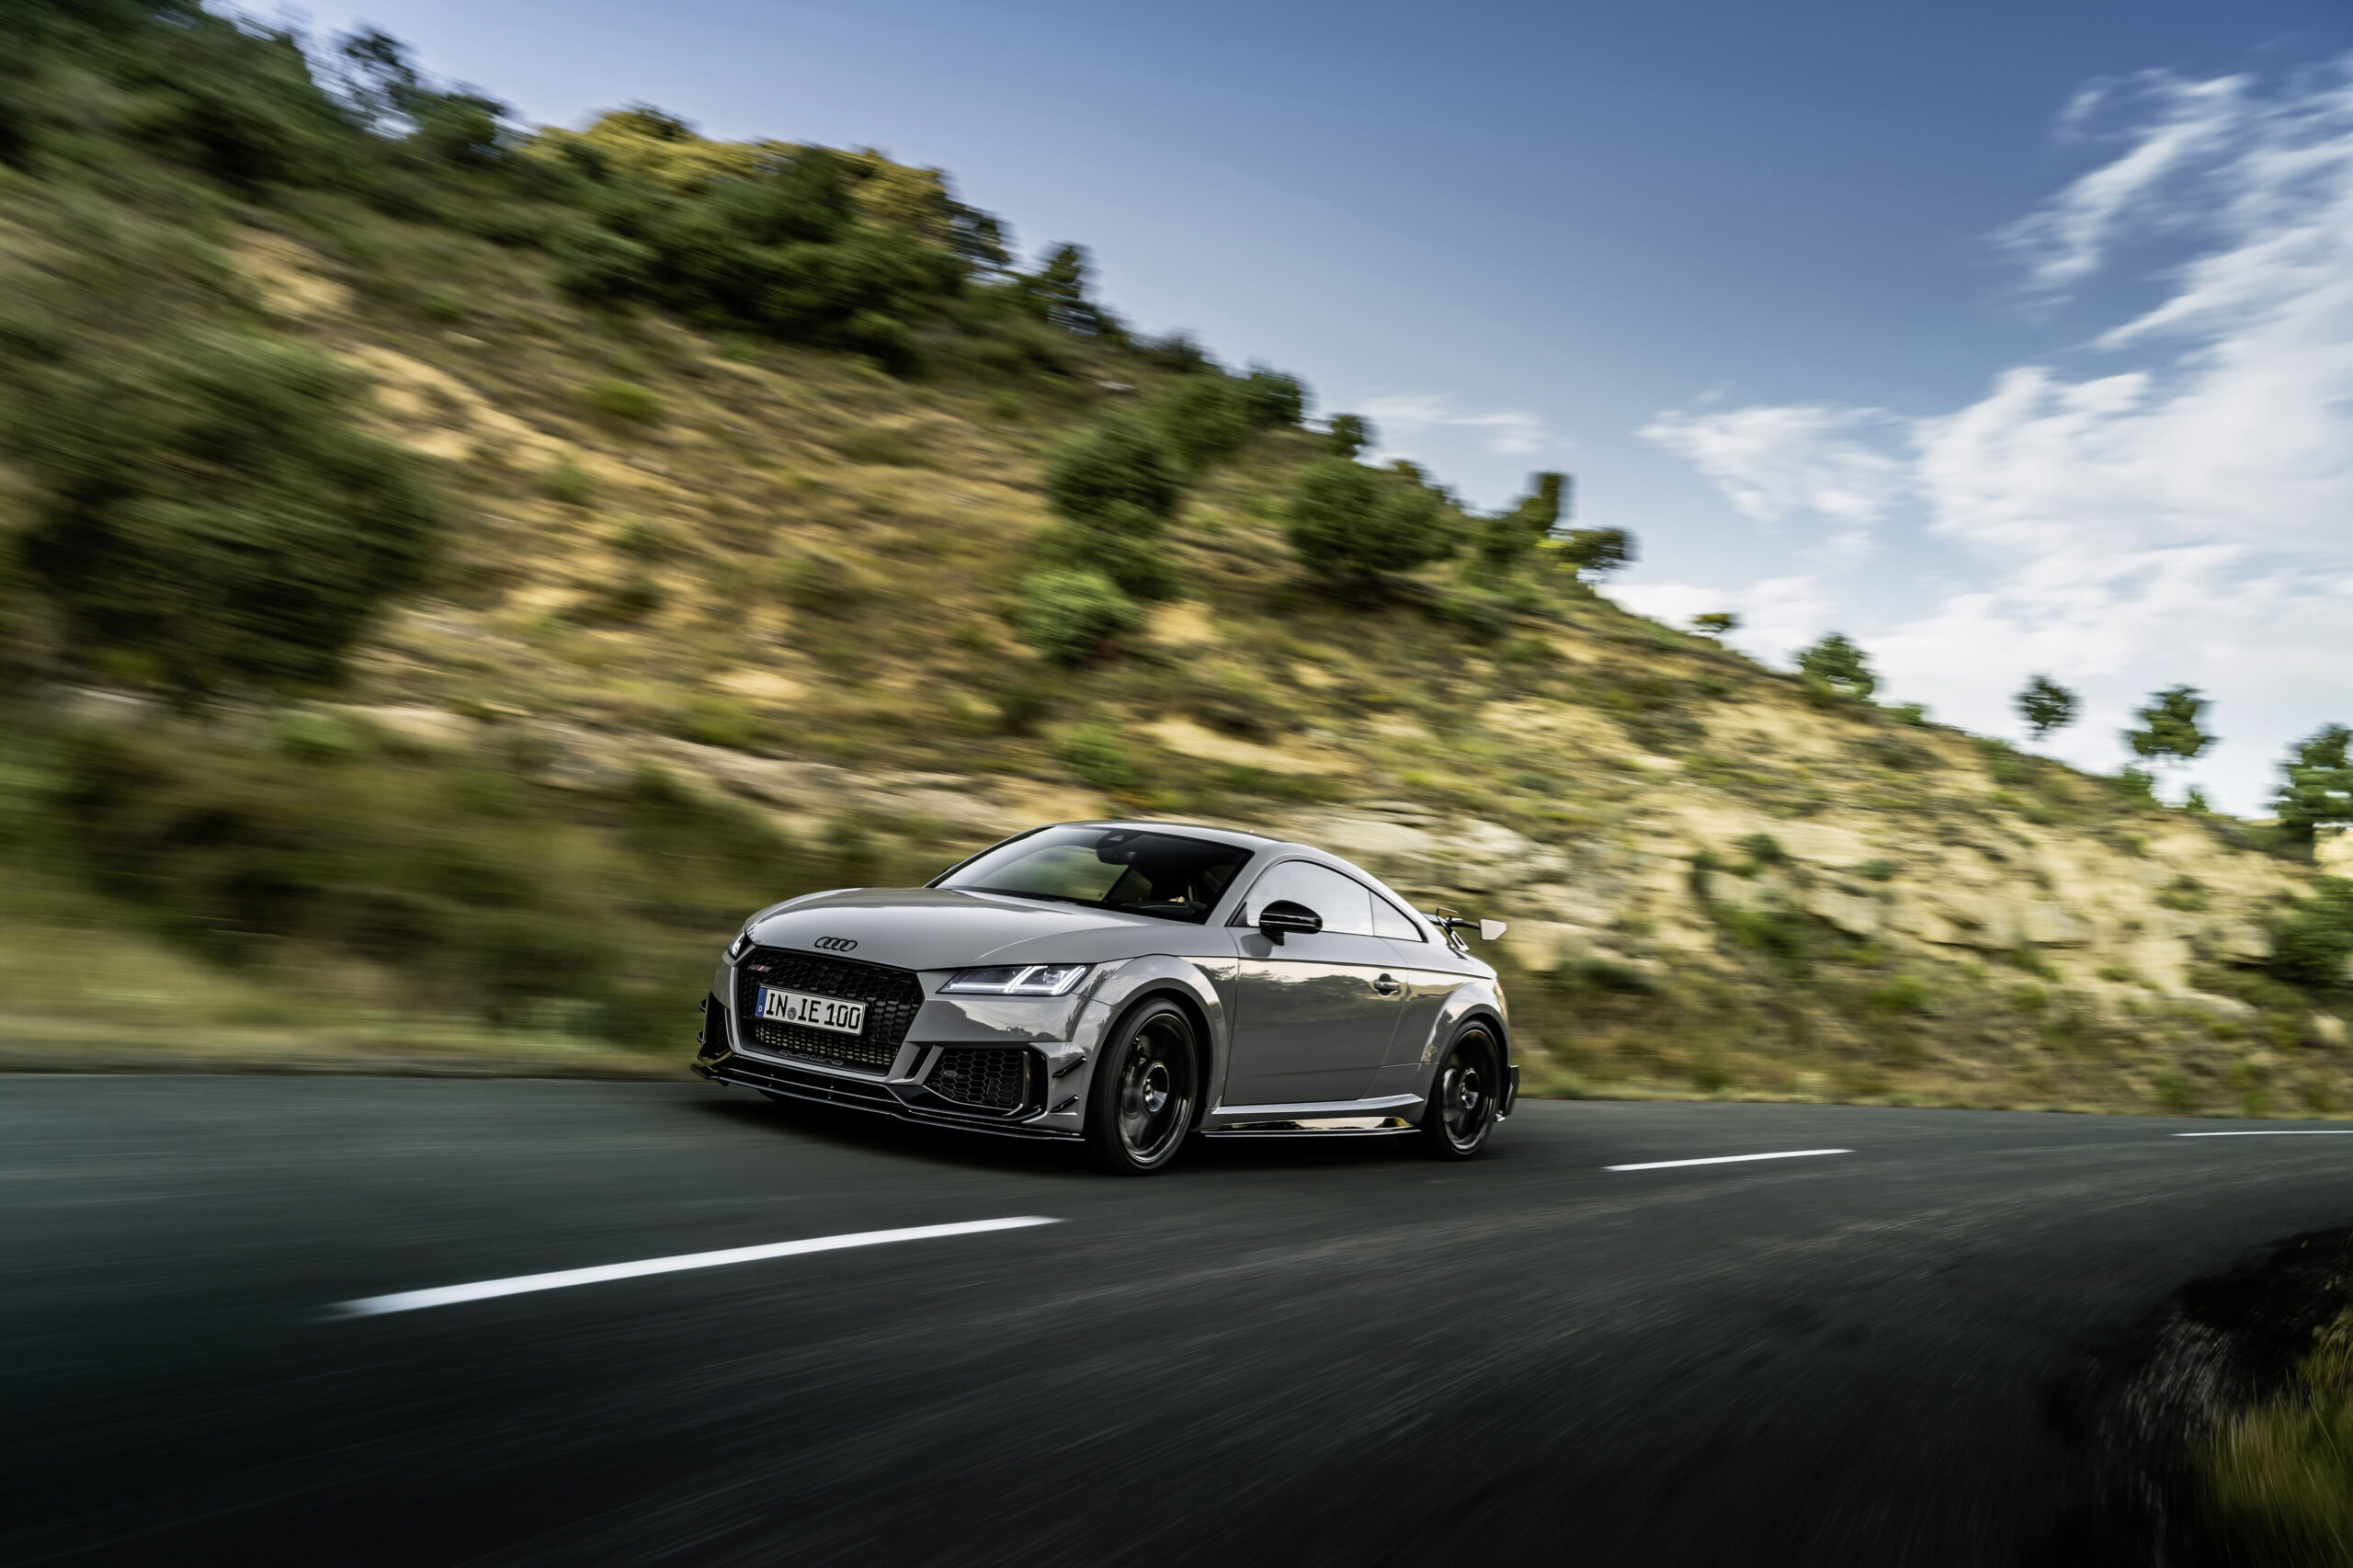 Ícono atemporal: Audi TT RS Coupé celebra el diseño y la innovación